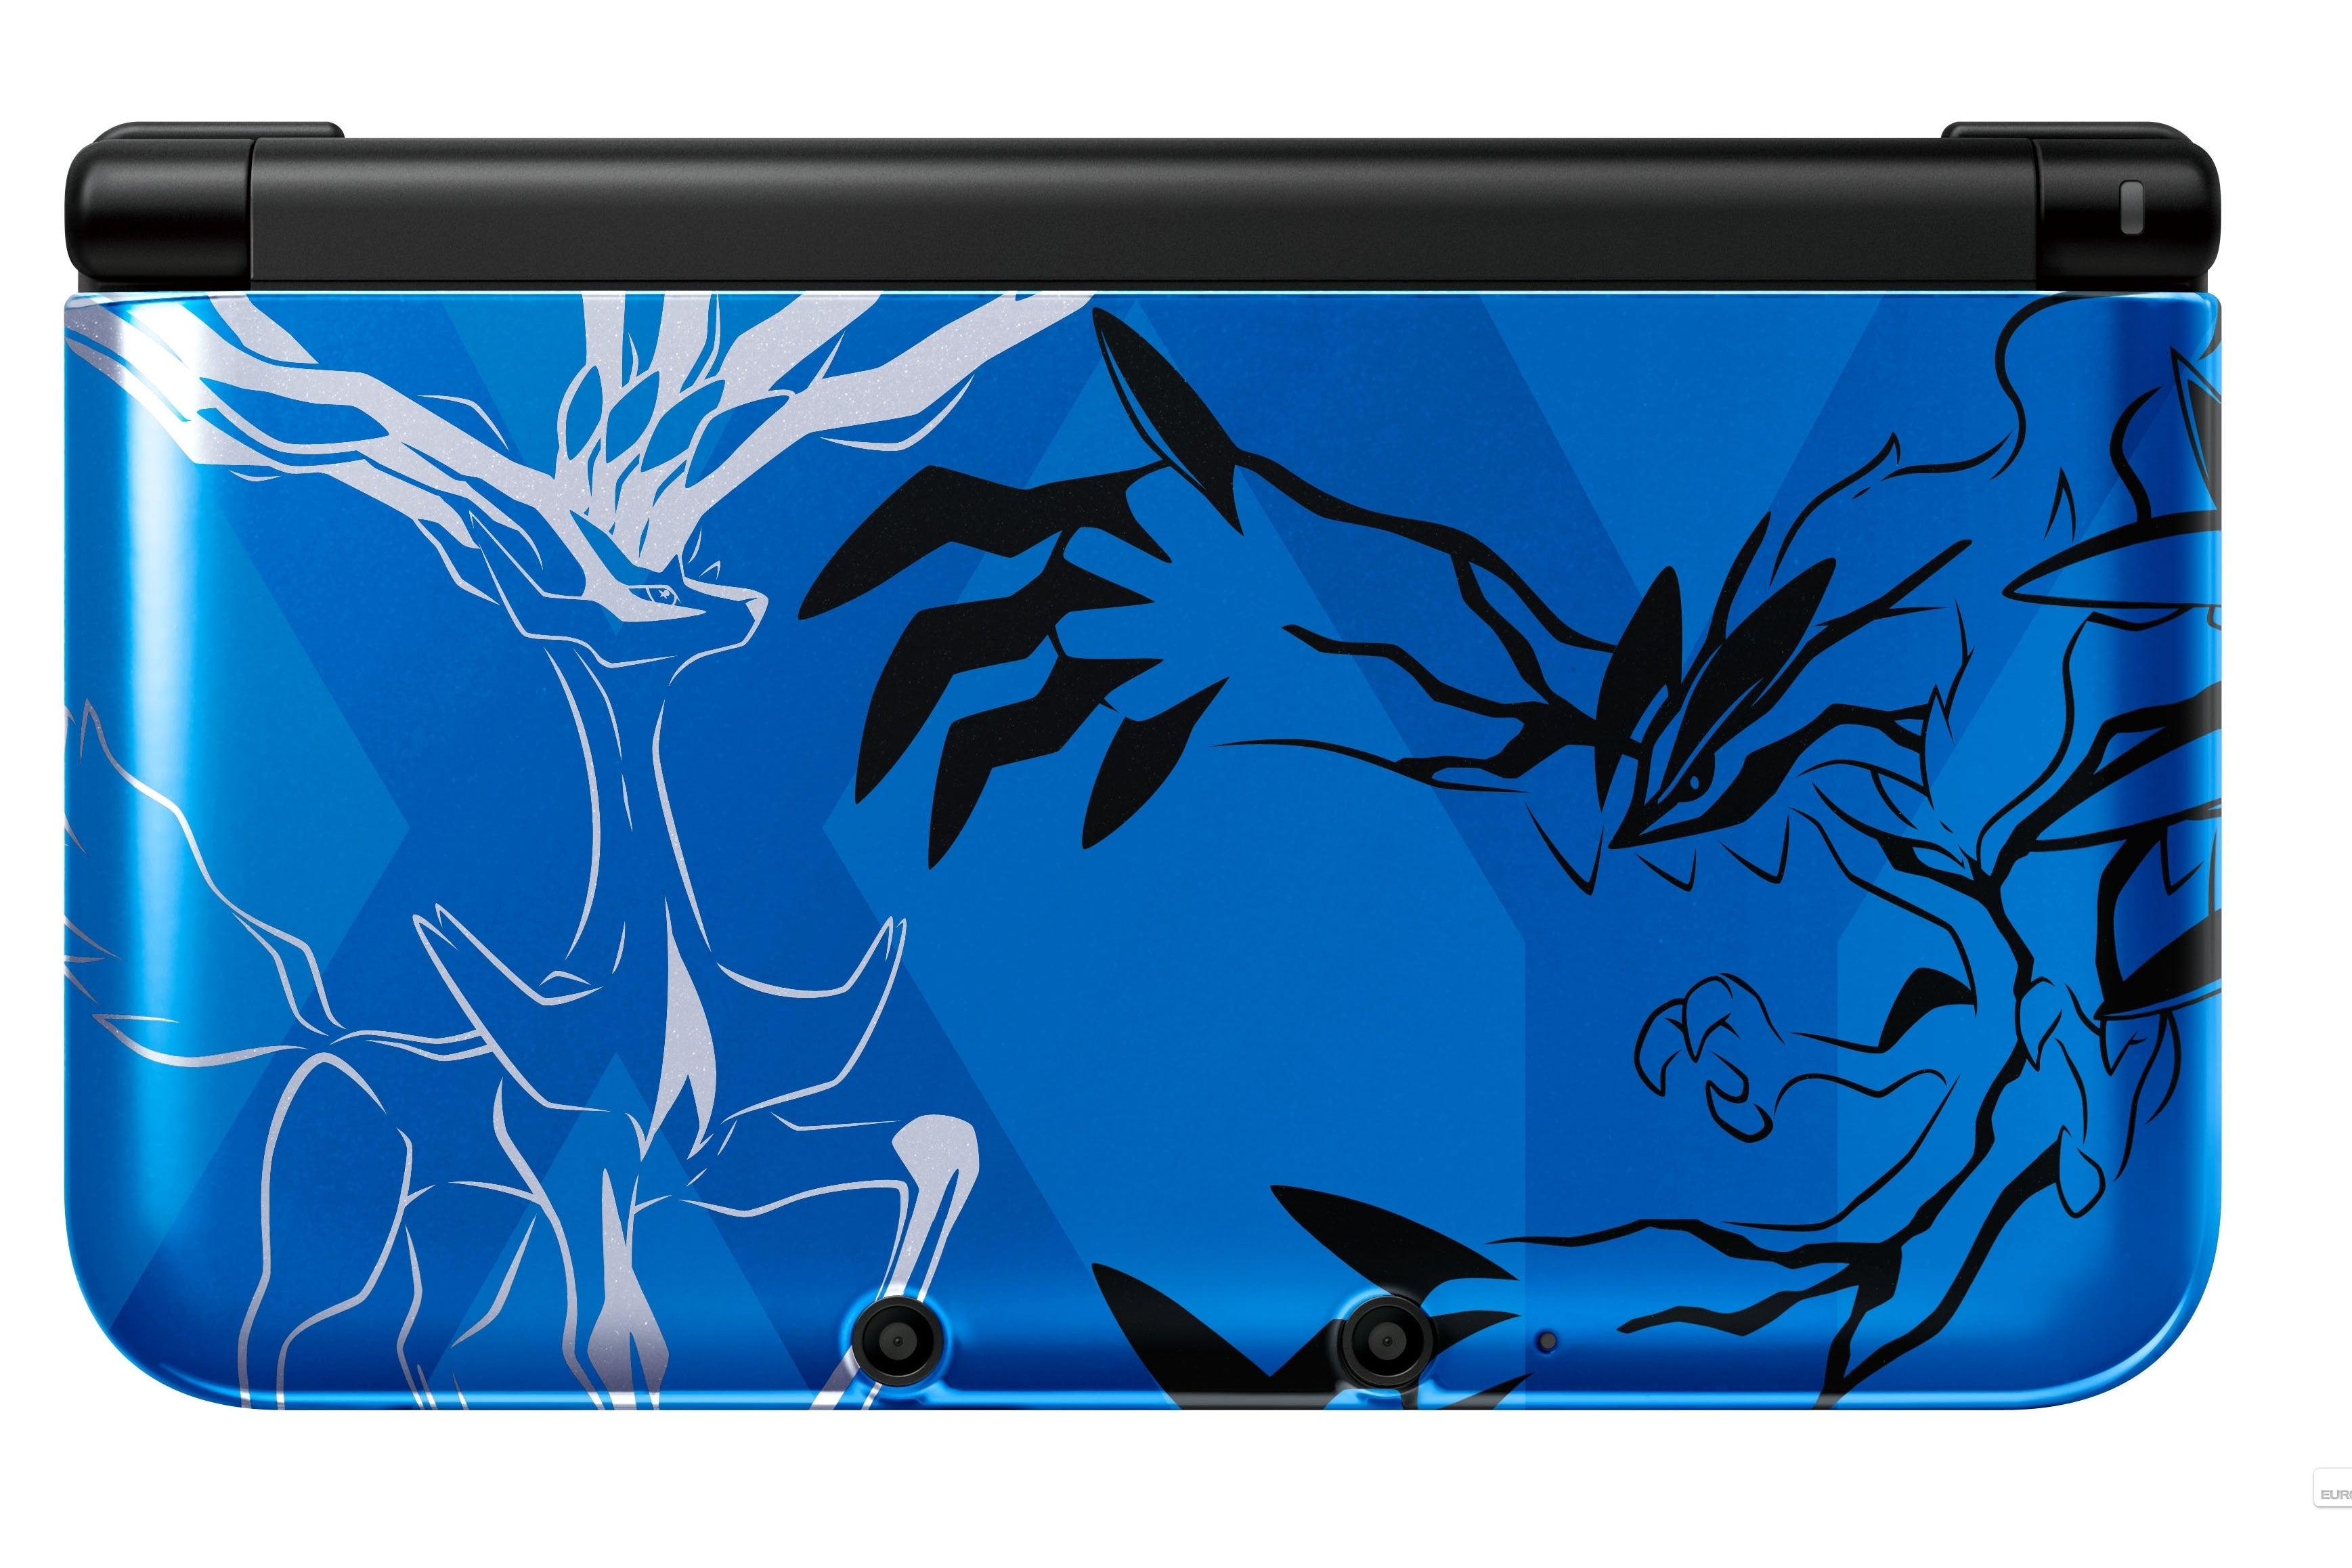 Immagine di Pokémon X e Y: 3DS XL in edizioni speciali per il lancio